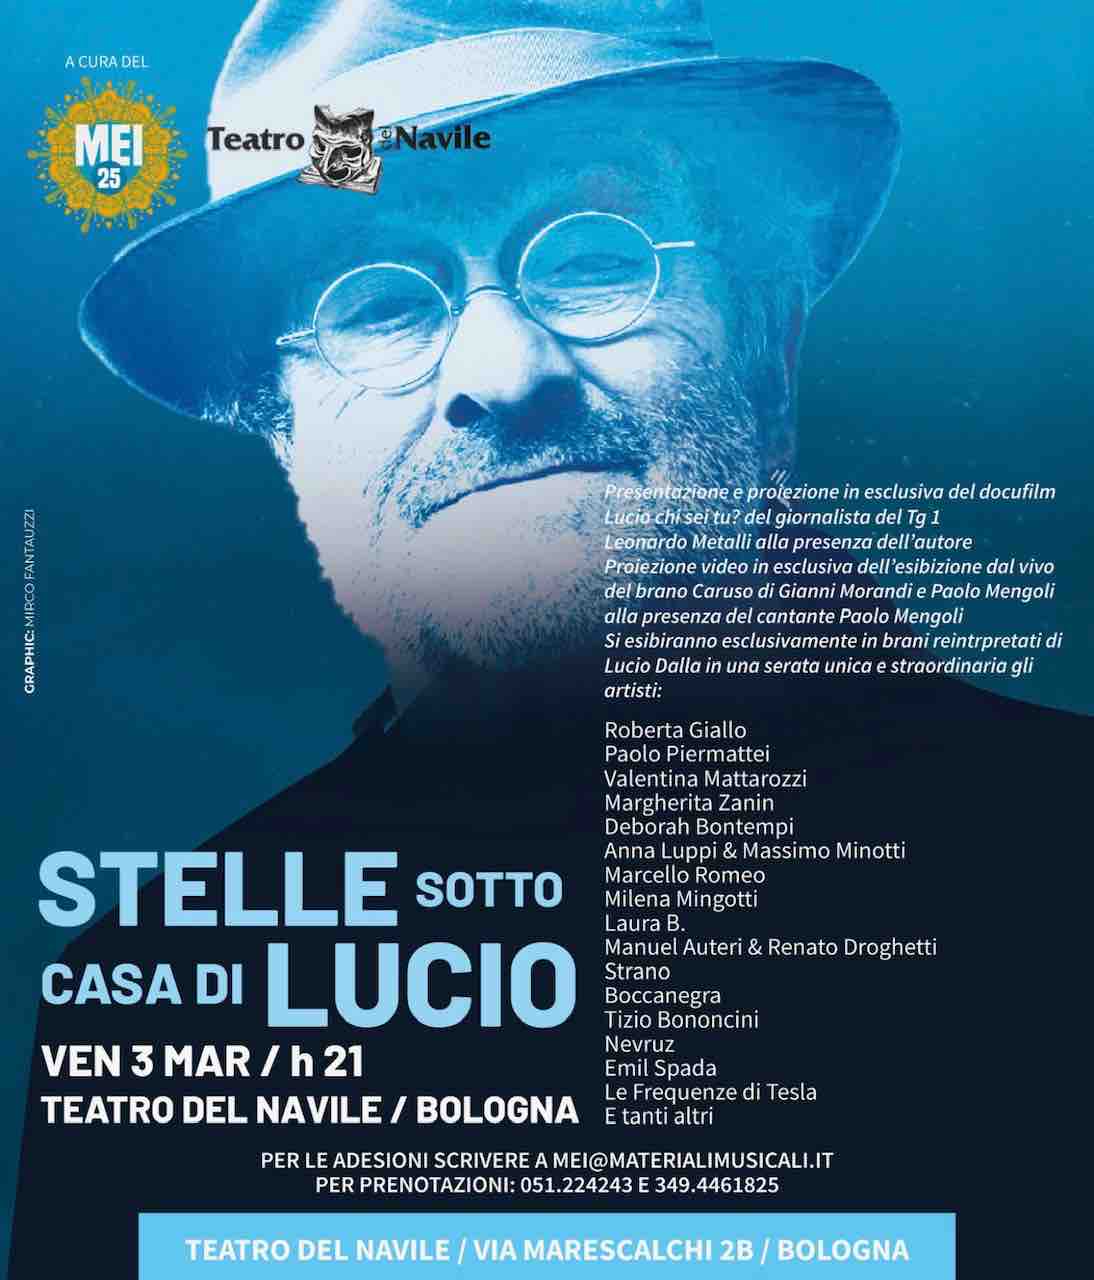 Venerdì 3 marzo Stelle sotto casa di Lucio al Teatro del Navile a Bologna, tanti artisti bolognesi uniti per Lucio Dalla